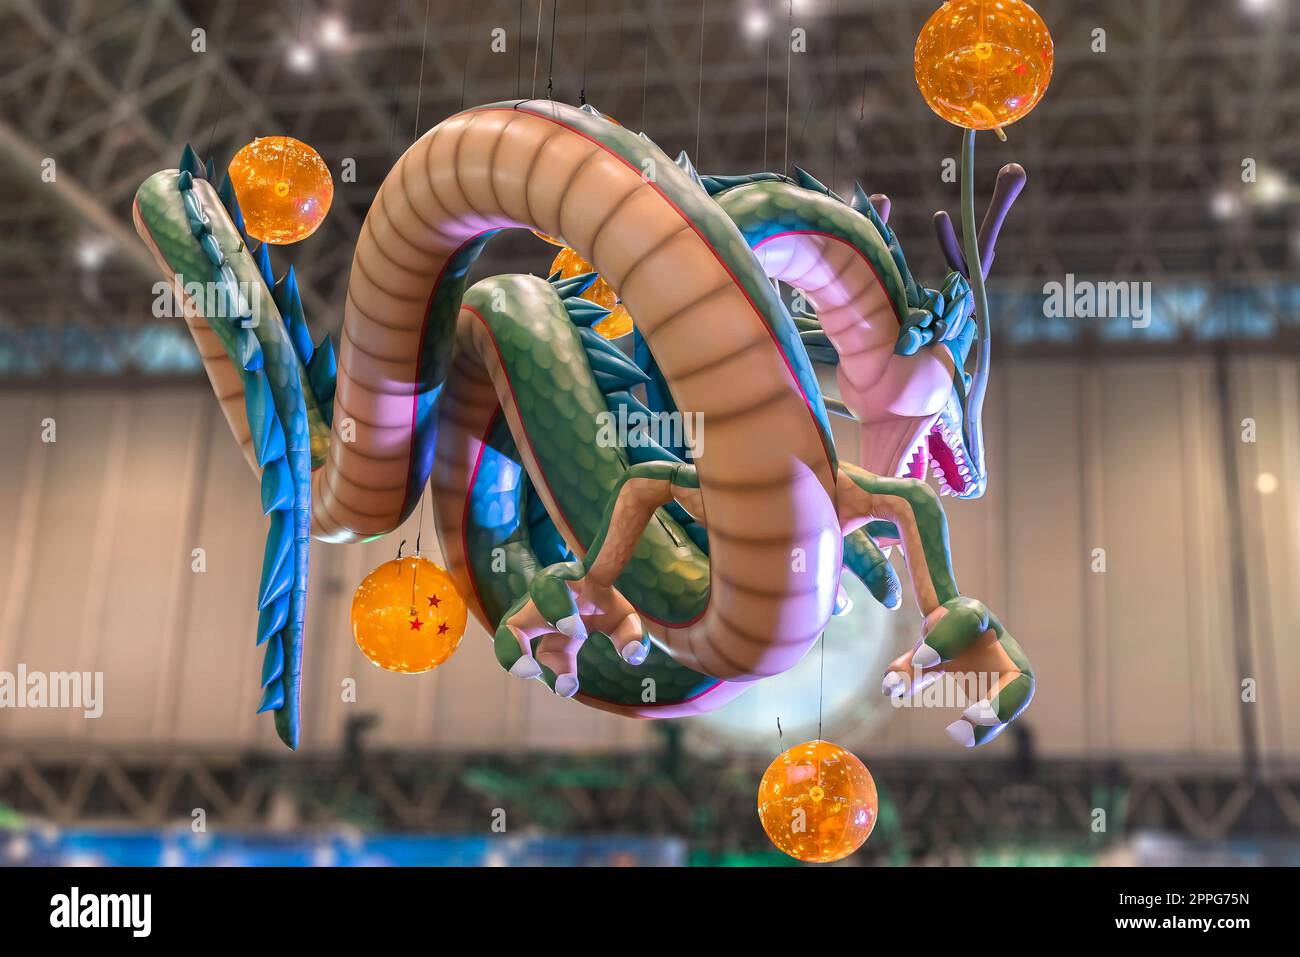 chiba, japon - décembre 22 2018 : énorme structure gonflable représentant le dragon Shenron de la série anime et manga de Dragon ball flottant sous le plafond de l'anime convention Jump Festa 19. Banque D'Images